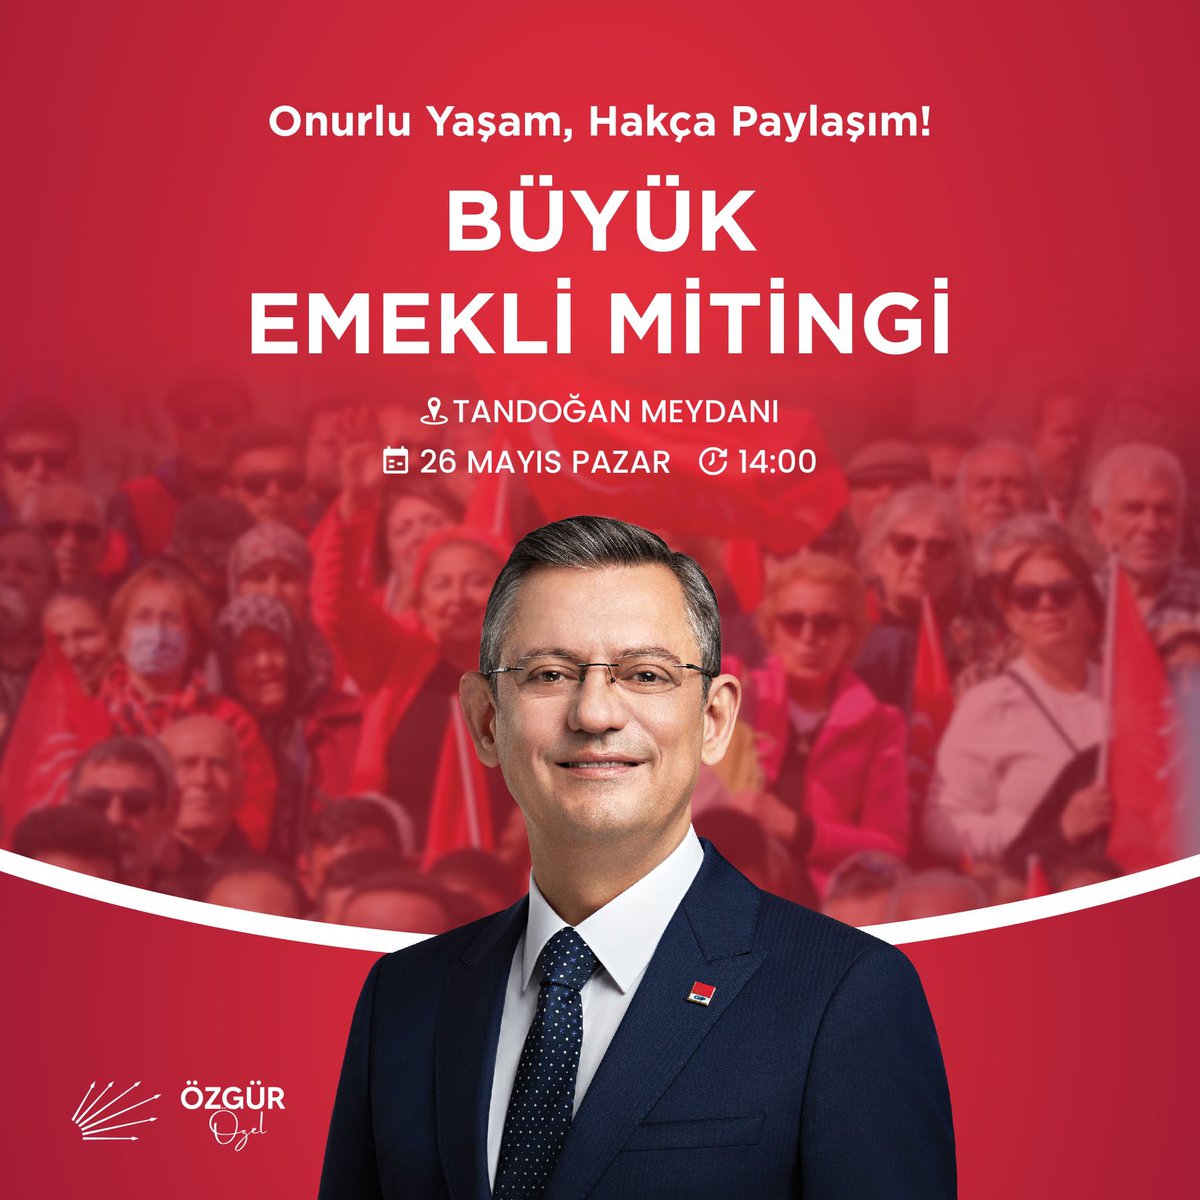 Yarın 14.00'te Tandoğan Meydanında Genel Başkanımız Sn. Özgür Özel'in düzenleyeceği Büyük Emekli Mitingi'ne emeklilerimiz başta olmak üzere tüm vatandaşlarımız davetlidir. #BüyükEmekliMitingi